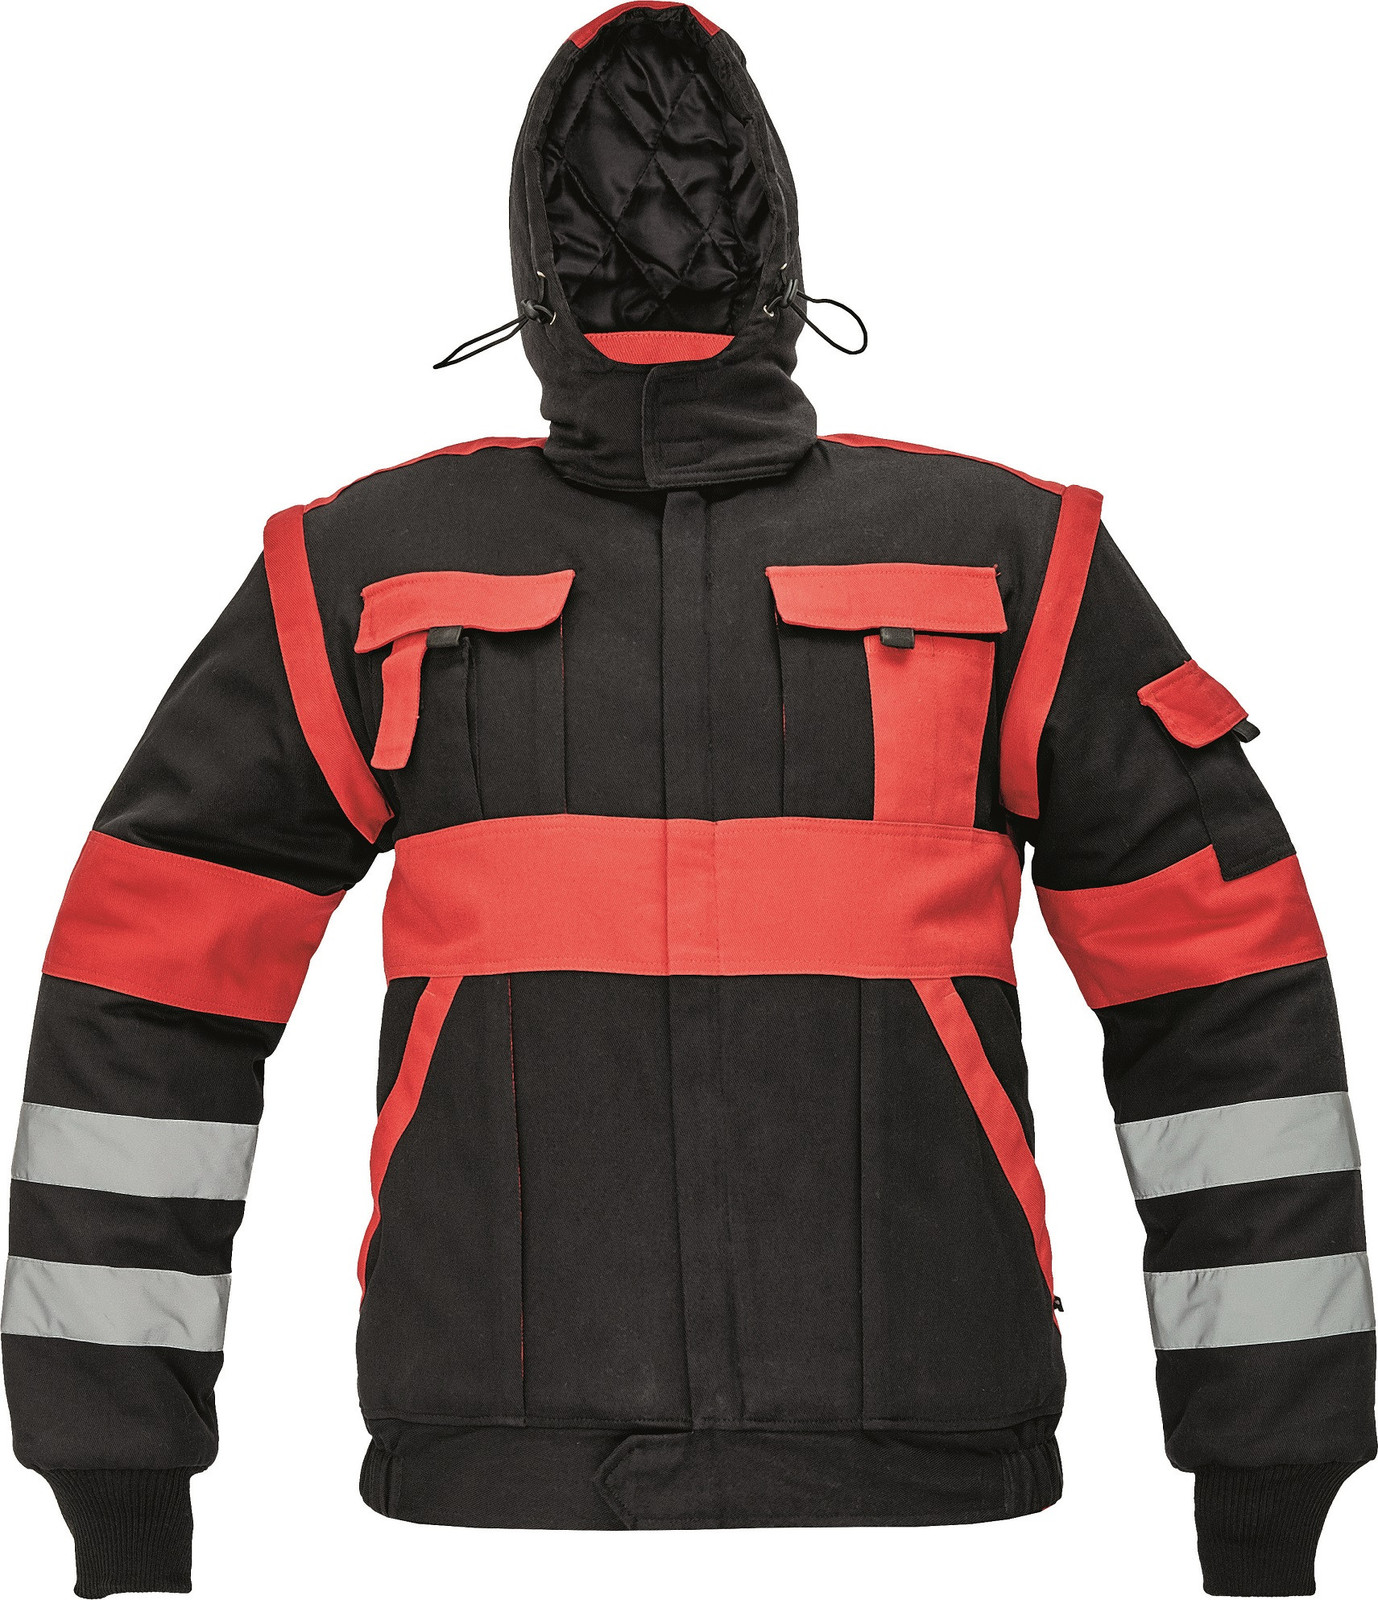 Zateplená montérková bunda Max Winter s reflexnými pruhmi 2v1 - veľkosť: 56, farba: čierna/červená